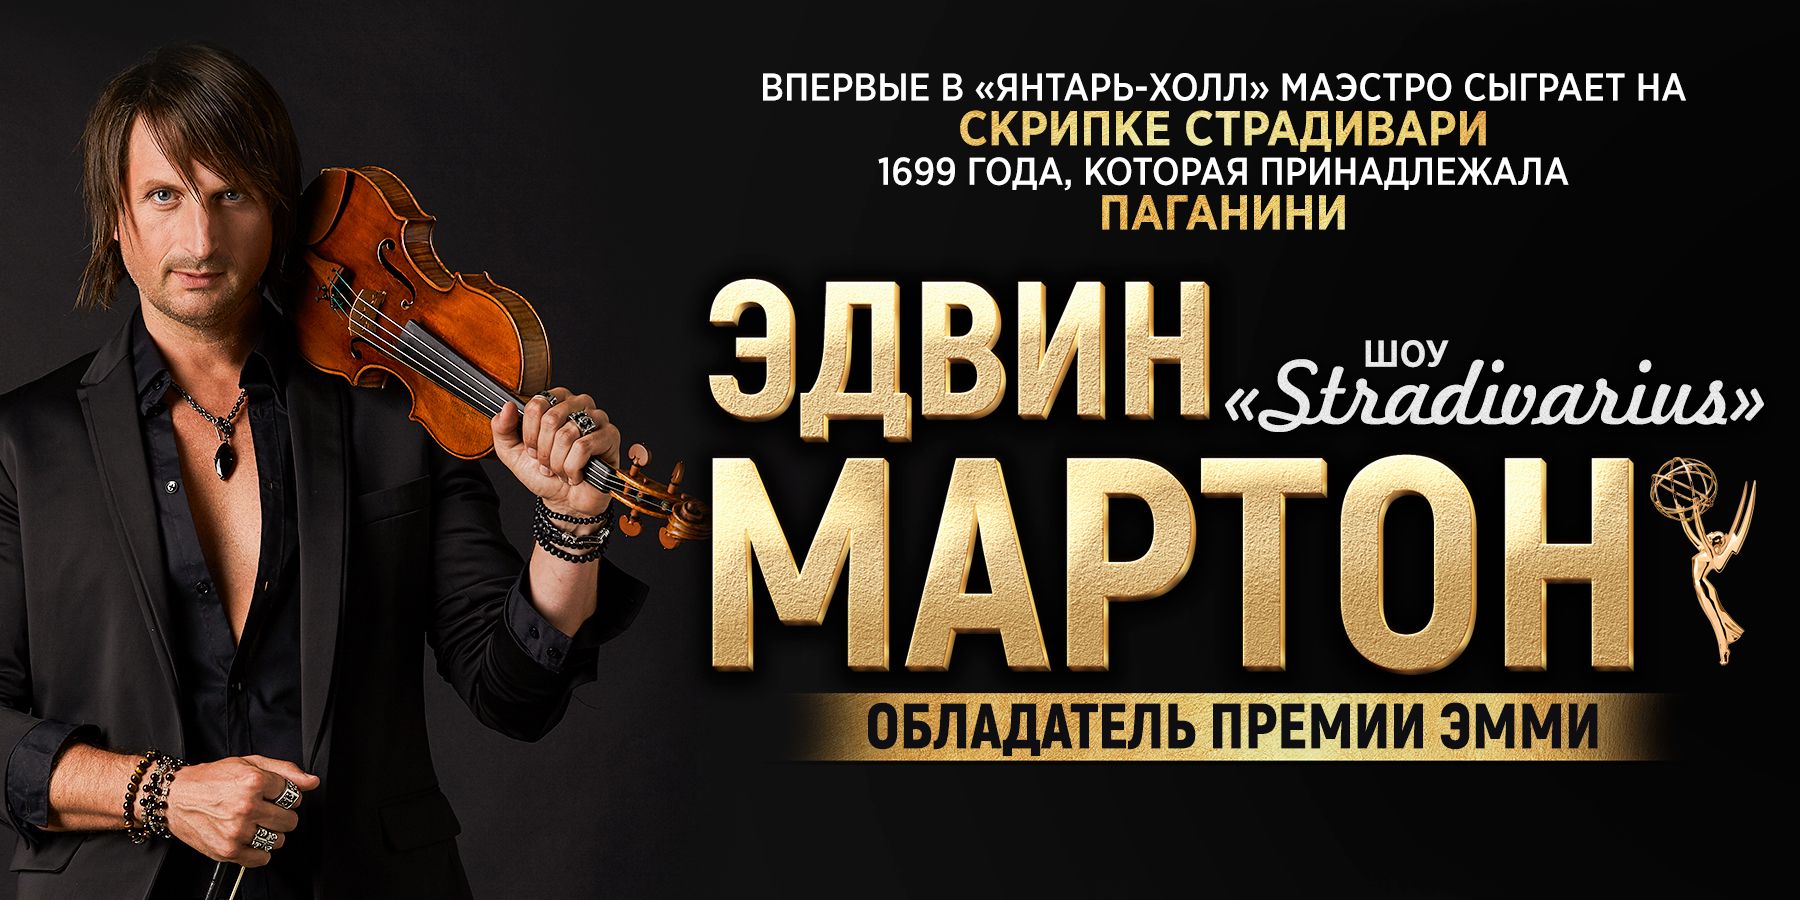 Edvin Marton "Stradivarius"